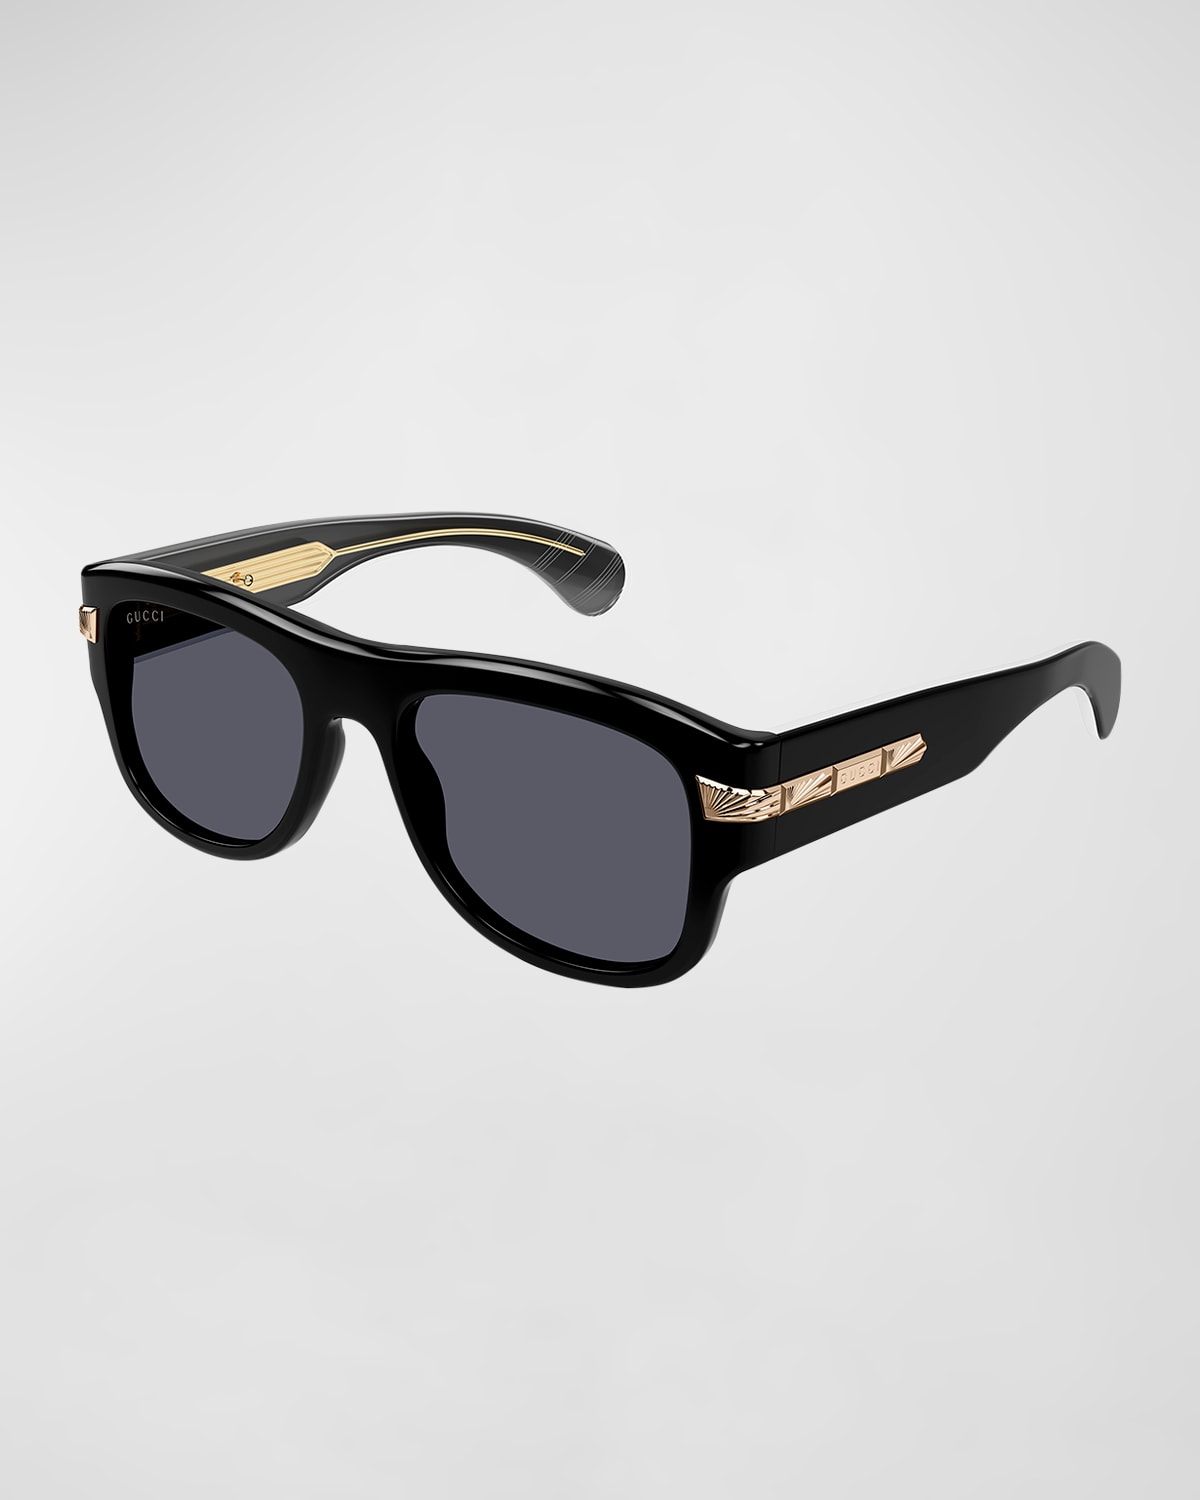 Gucci Men's New York 30's 54mm Square Sunglasses In Black Grey